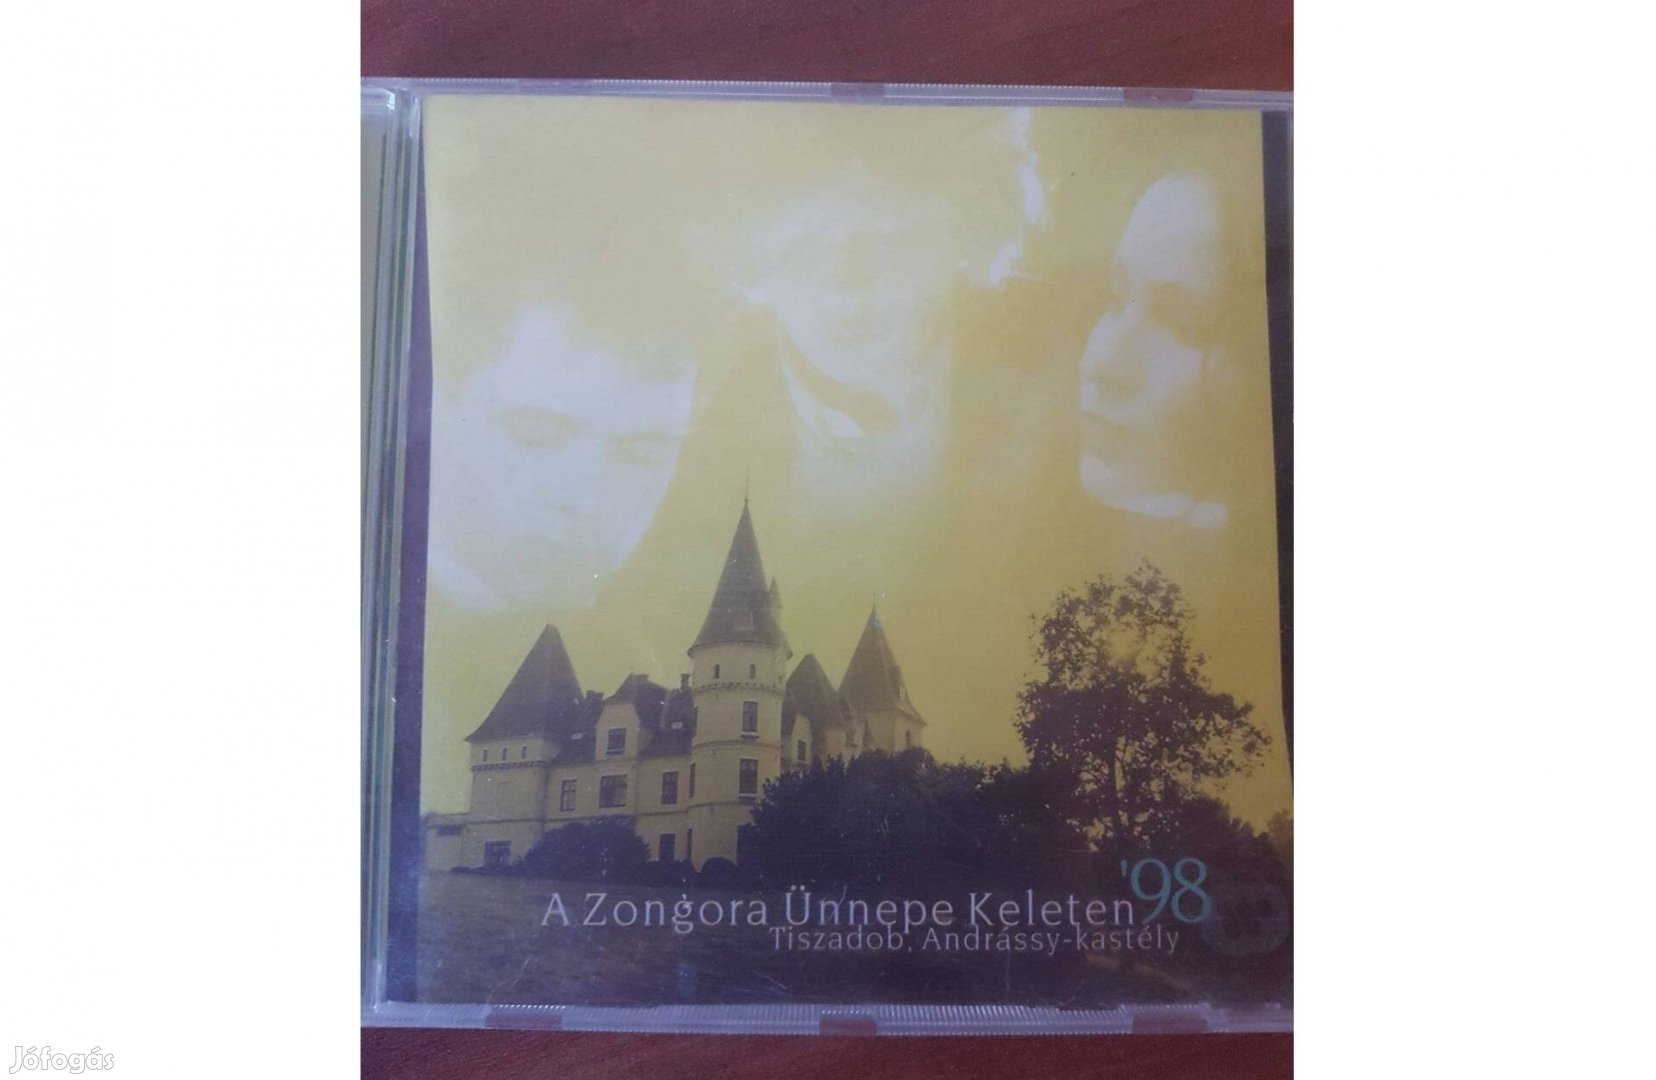 A Zongora Ünnepe Keleten '98 CD